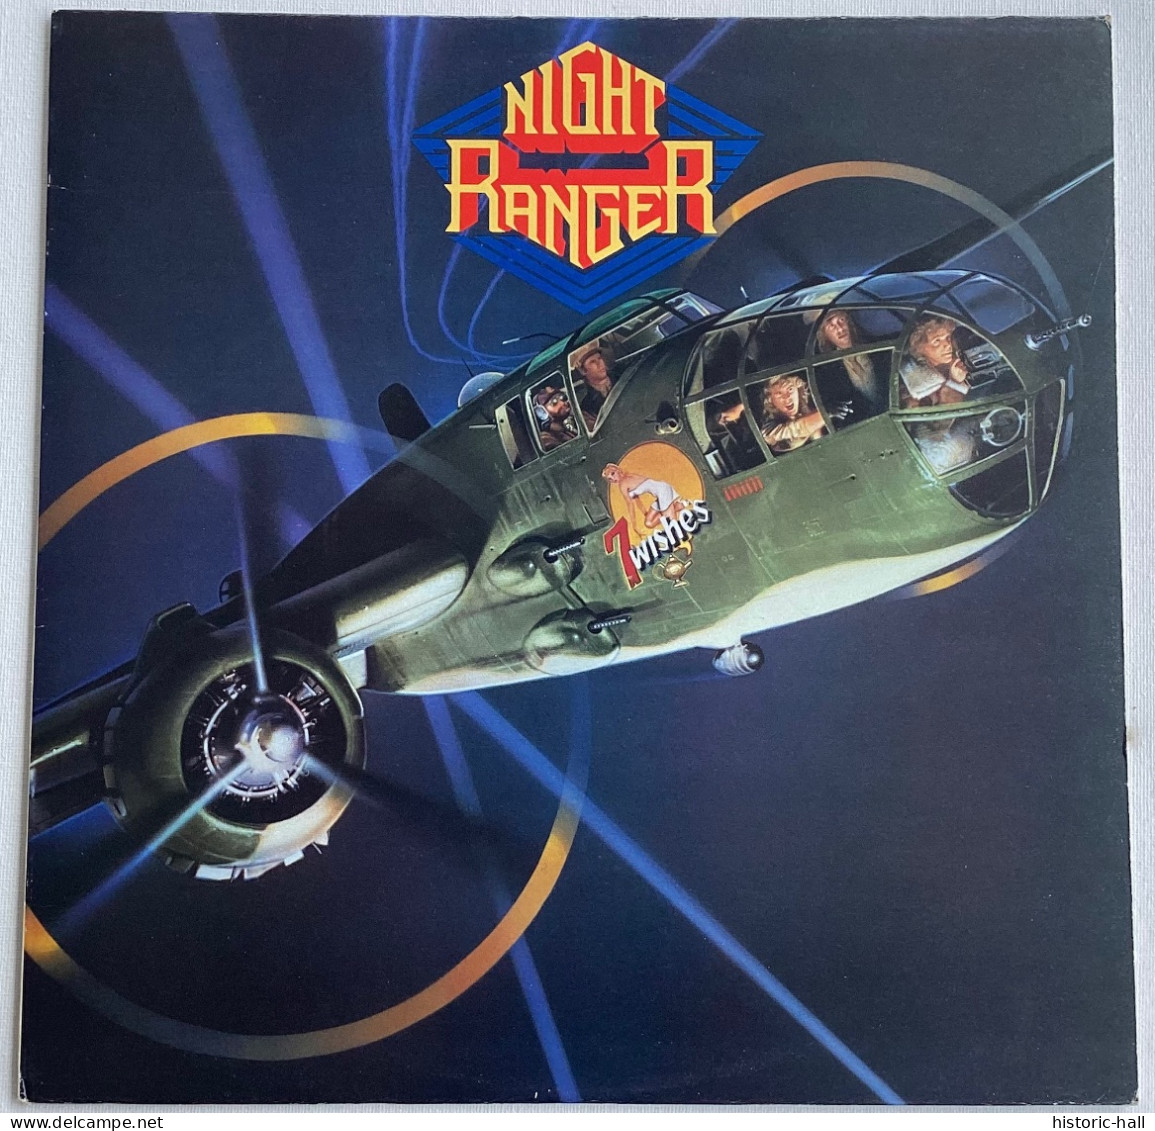 NIGHT RANGER - 7 Wishes - LP - 1985 - Canadian Press - Hard Rock & Metal